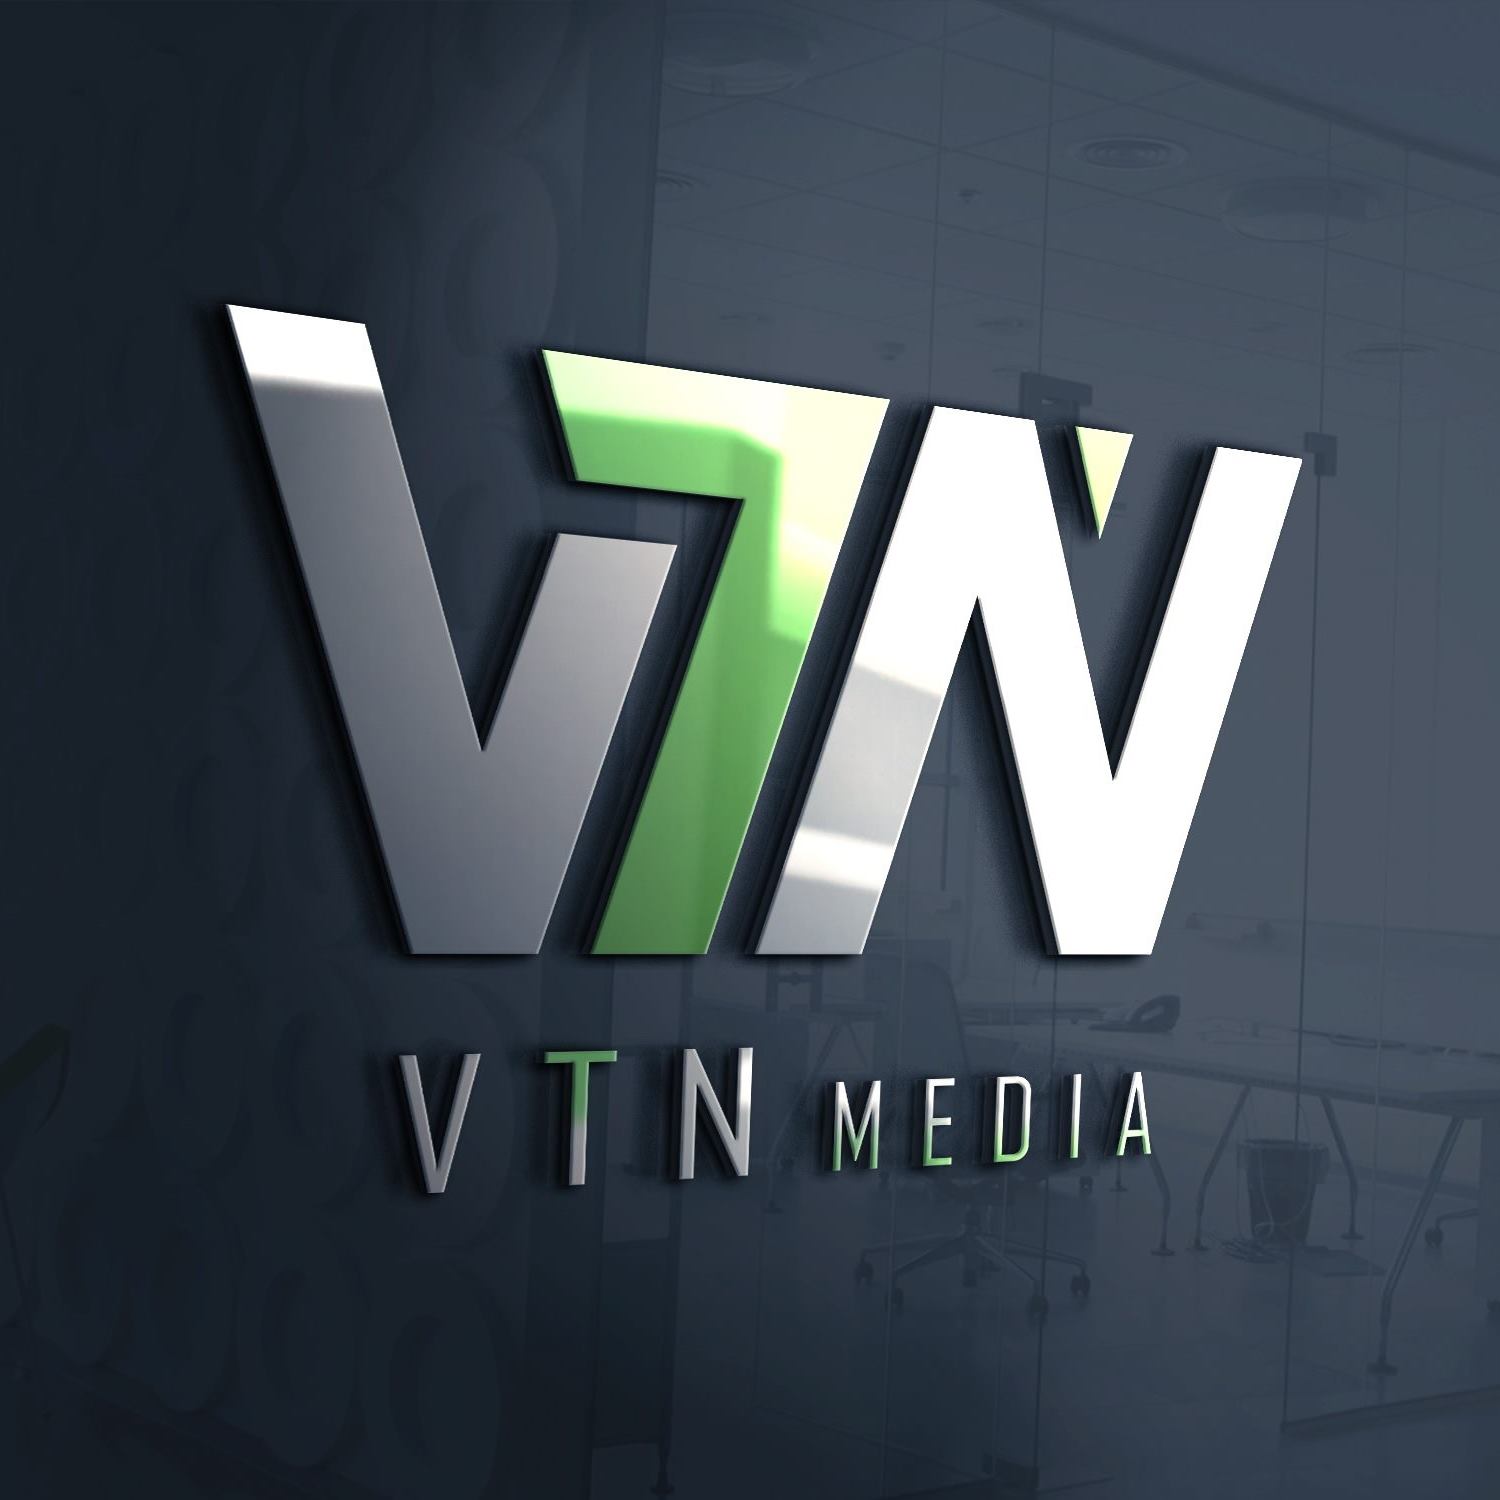 VTN Media Và Những Gì Bạn Chưa Biết?